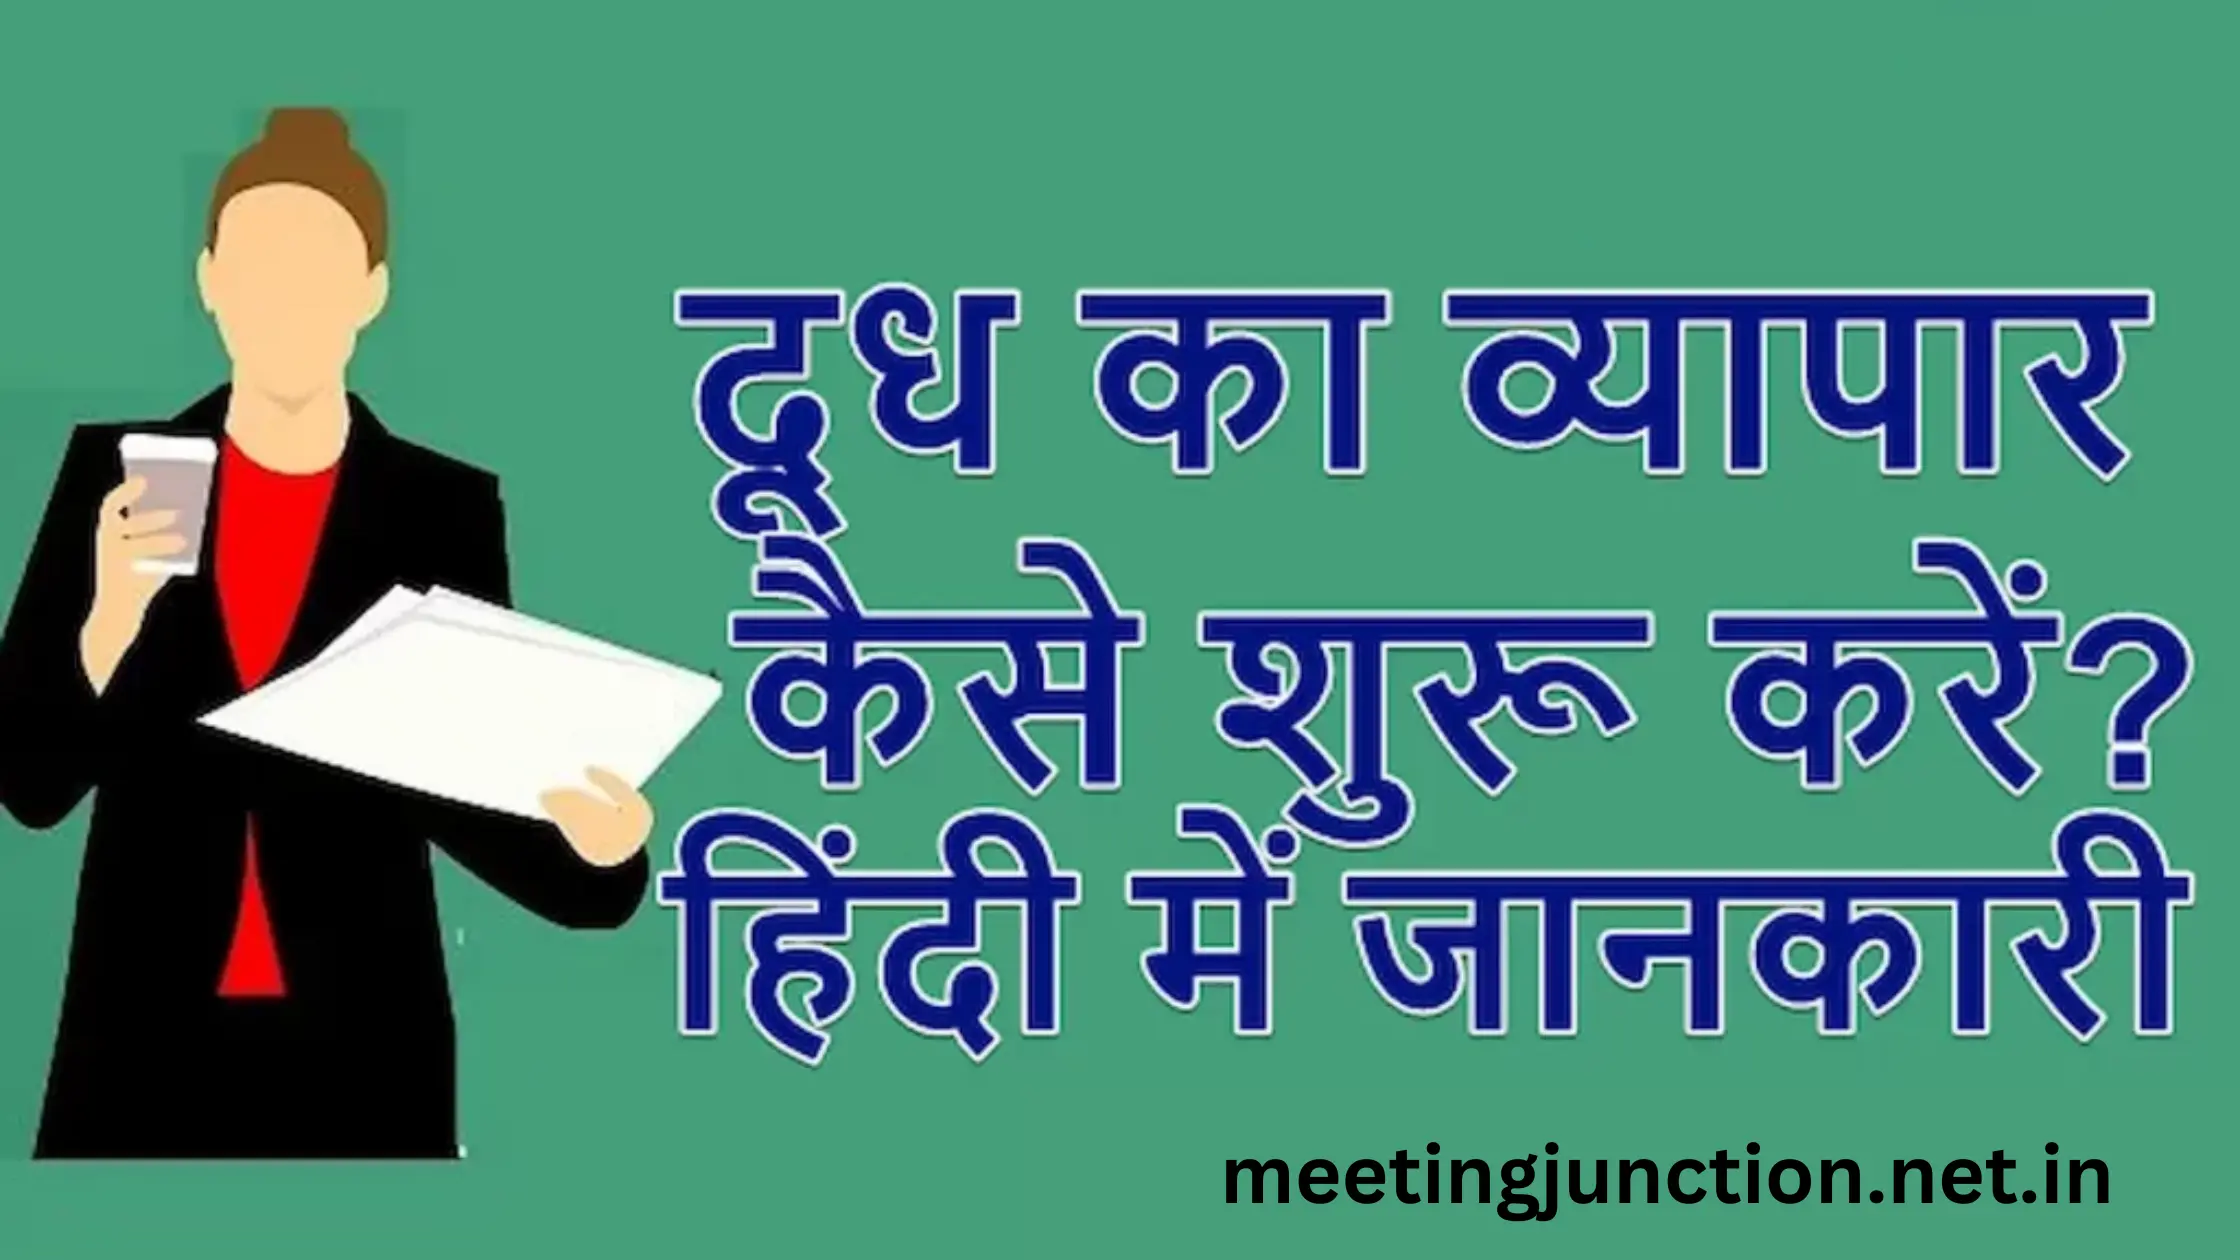 दूध का व्यापार कैसे शुरू करें? | Milk Dairy Business Plan in Hindi